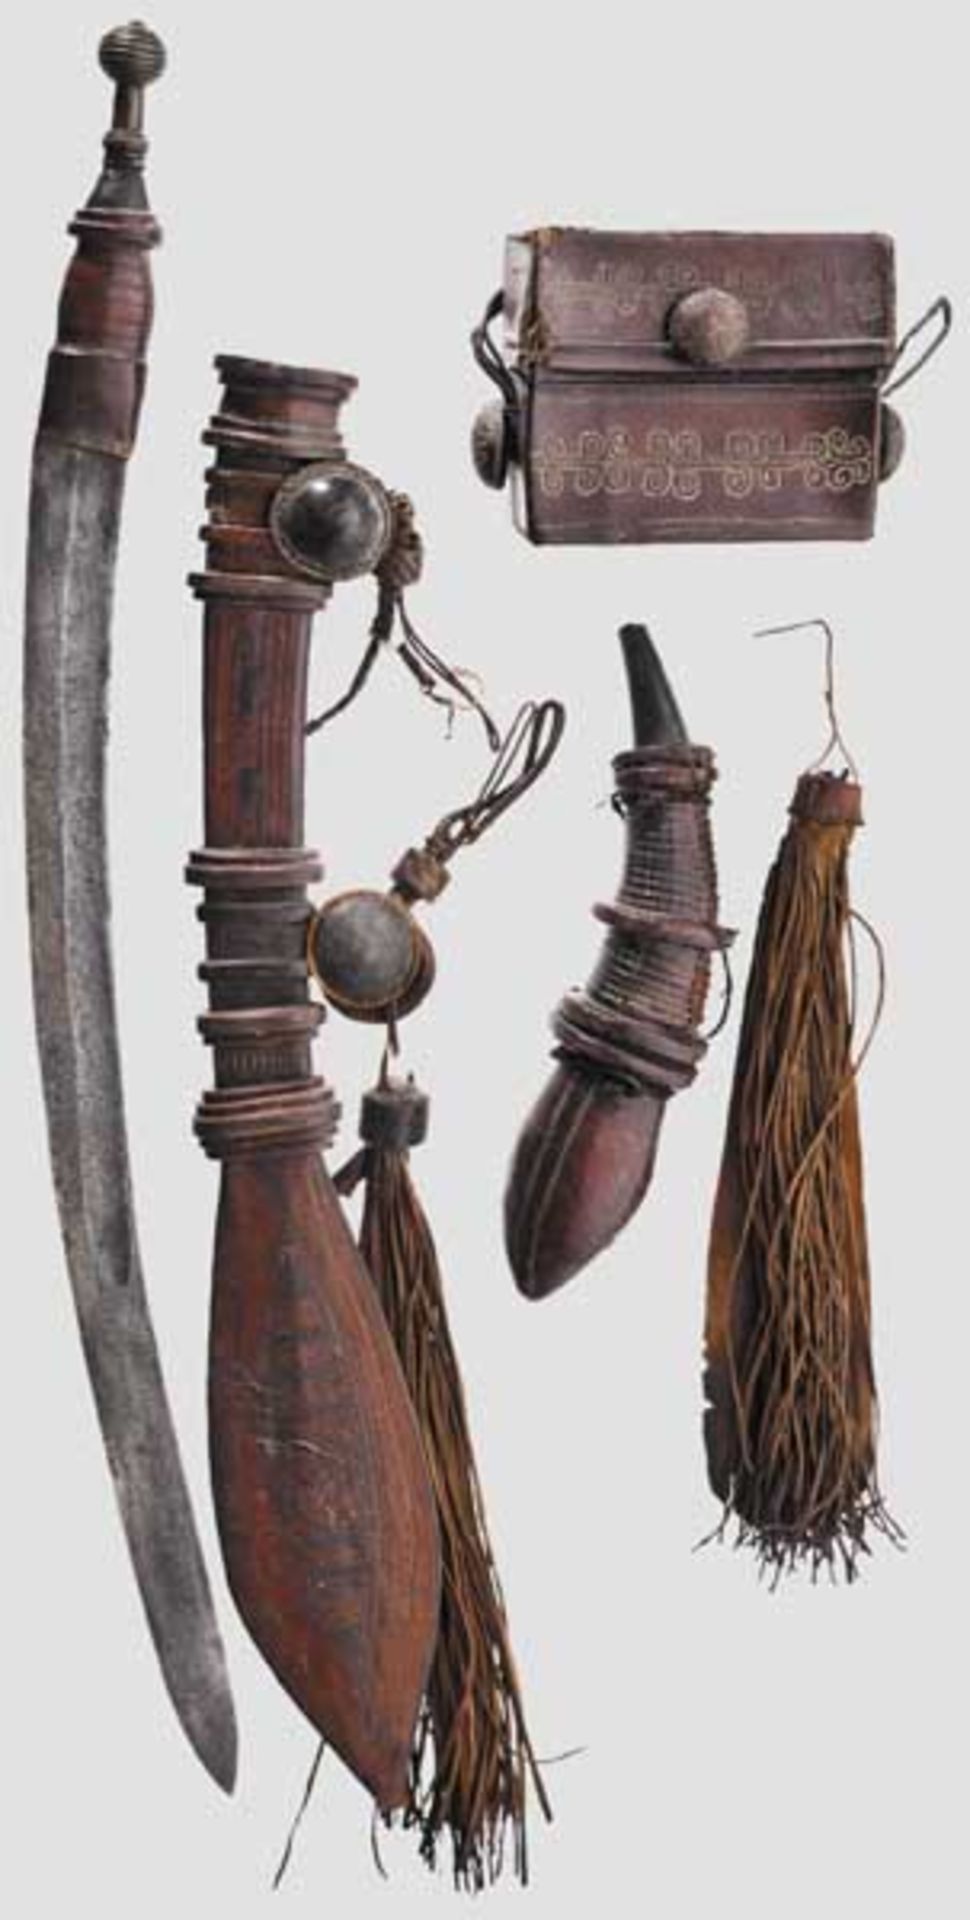 Schwert, Pulverhorn und Tasche der Malinke, Westafrika   Schwert mit gekehlter Klinge und